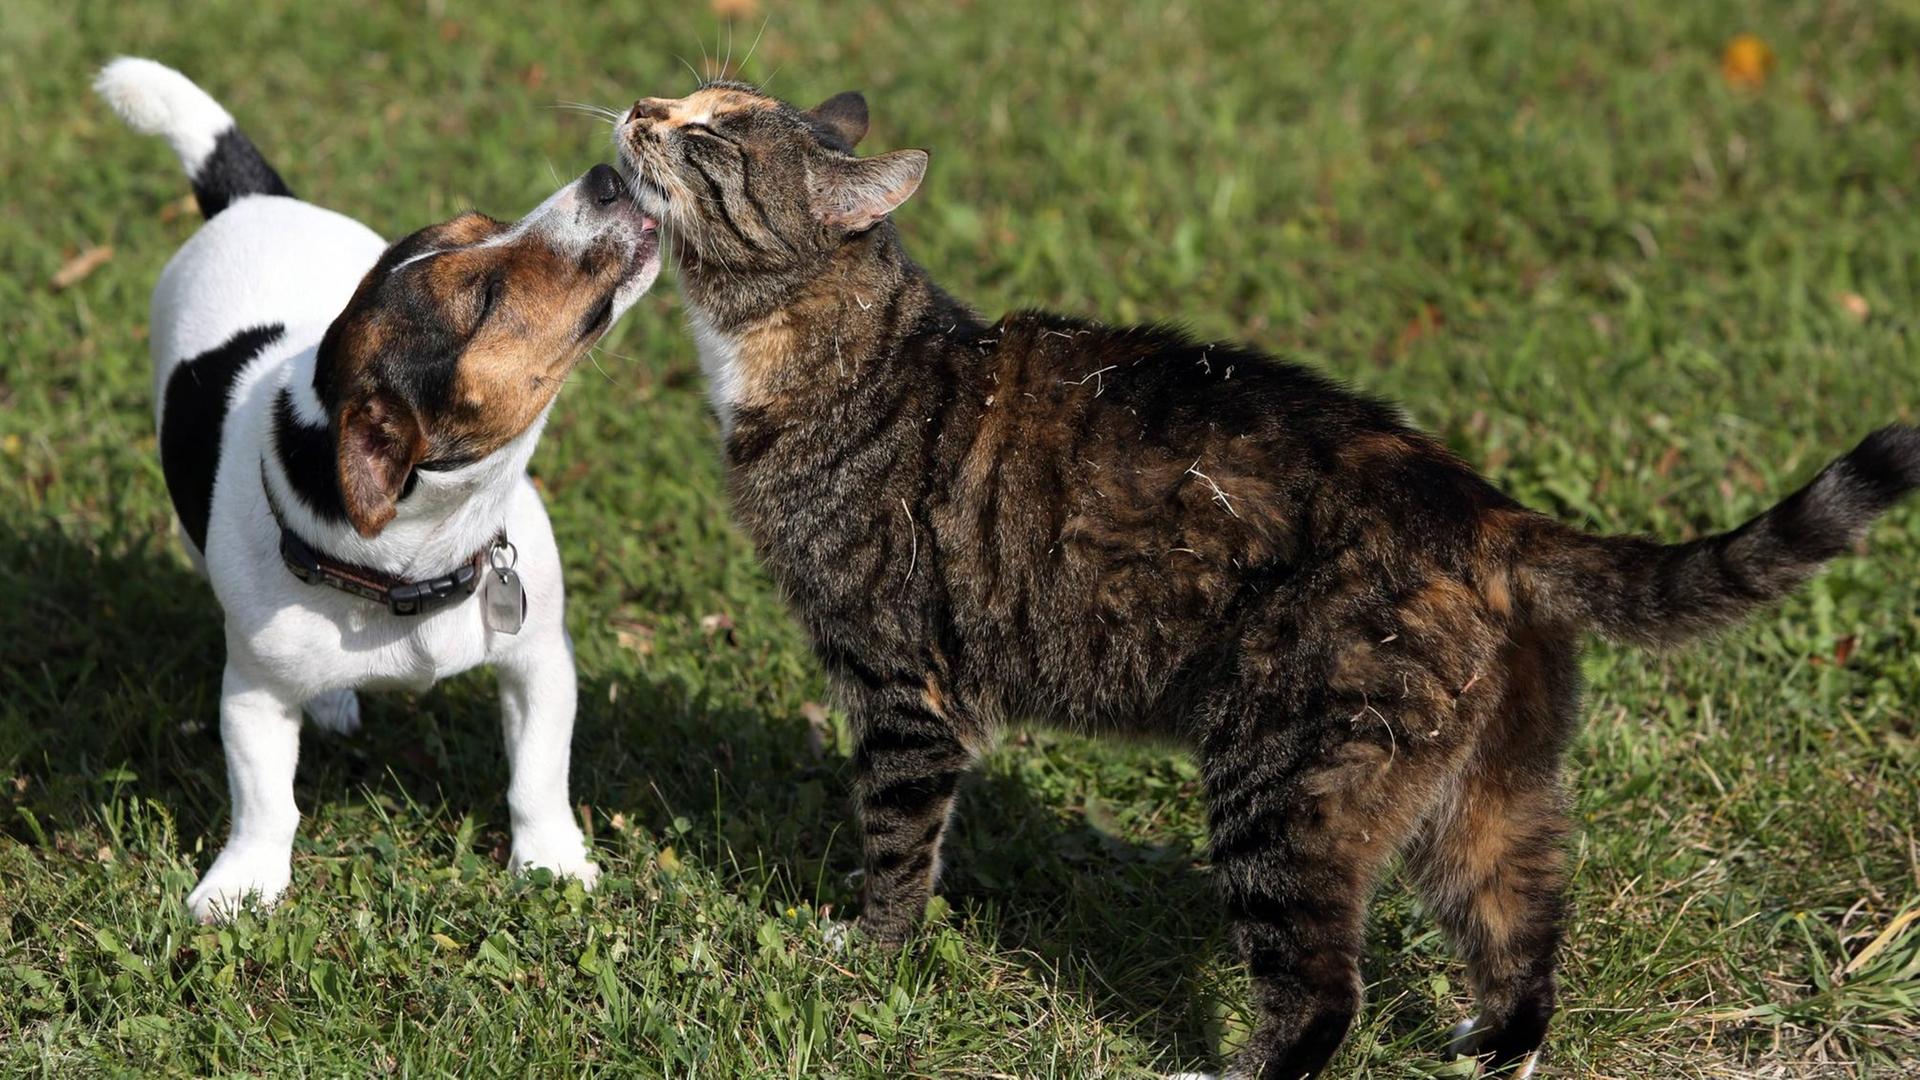 Jack Russell Terrier leckt eine Hauskatze ab. Jack Russell Terrier licks a House cat